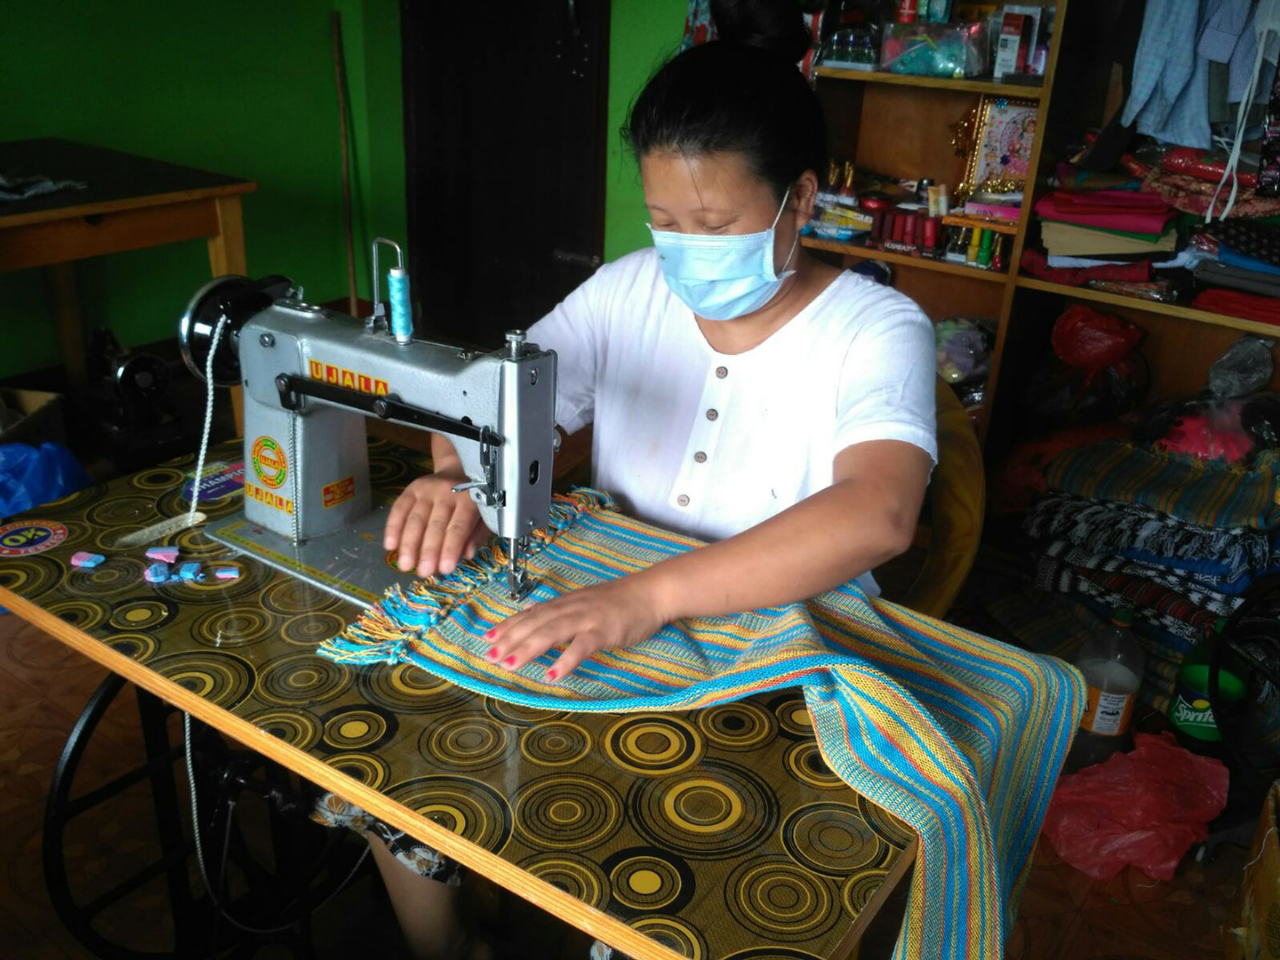 밀알복지재단 네팔 사업장 VOICE 센터 장애인 훈련생의 생산품 제작 모습